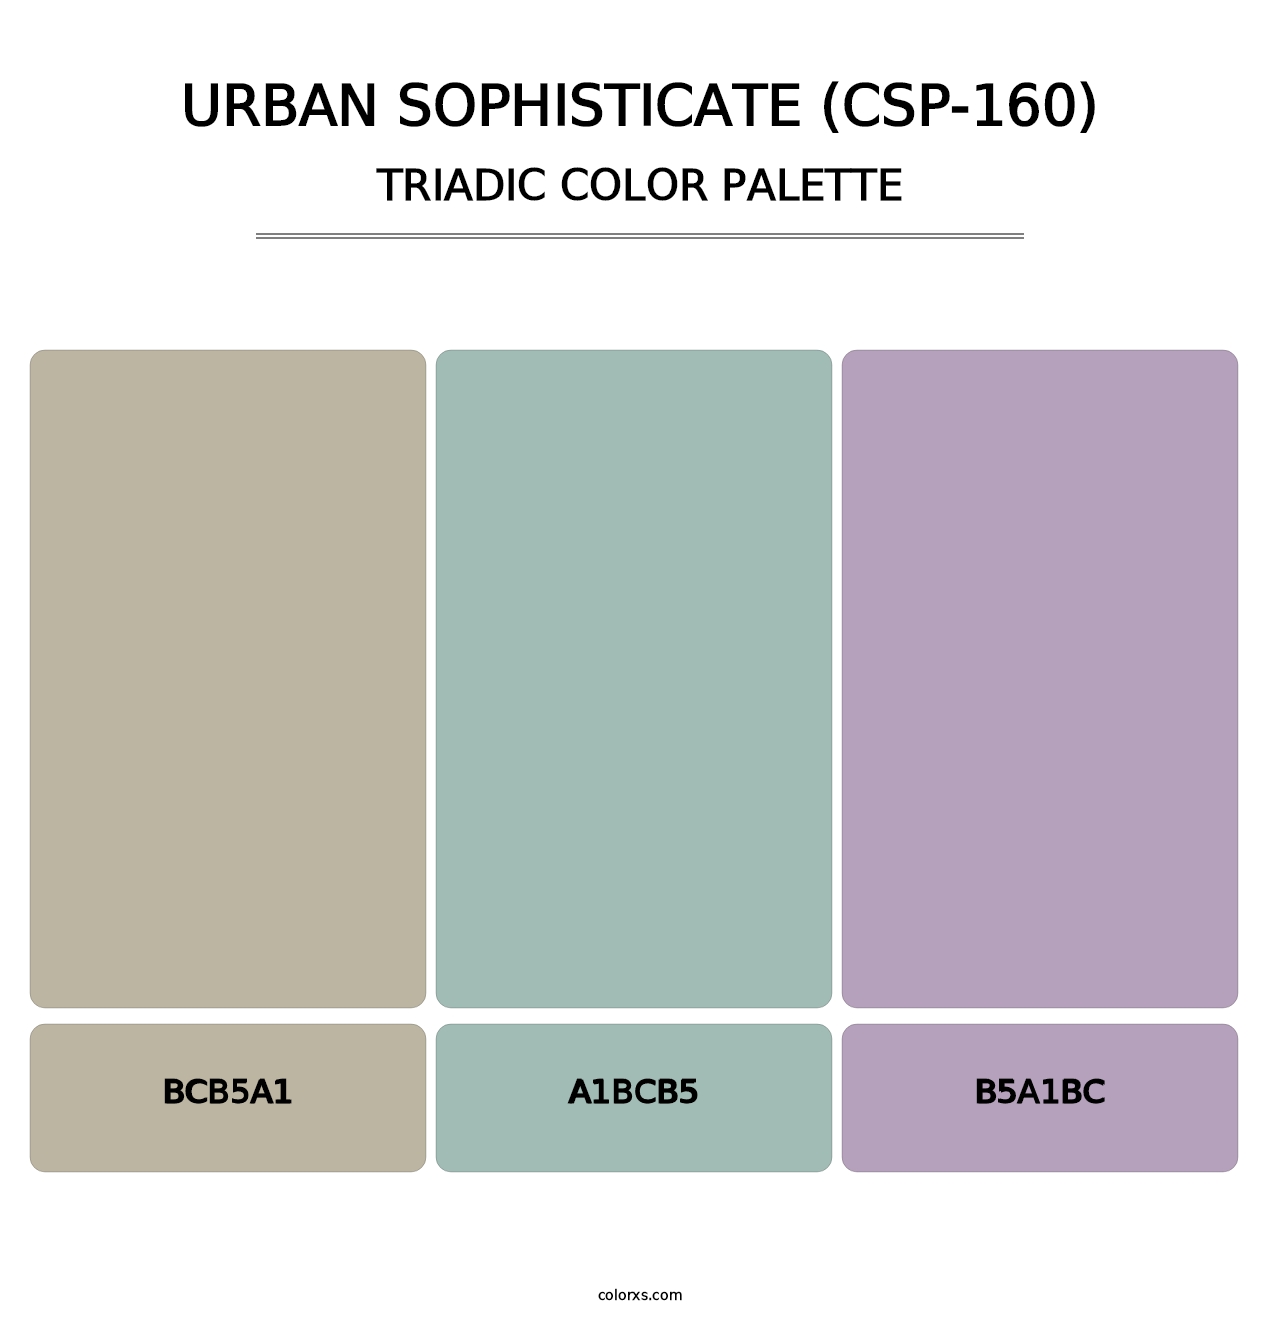 Urban Sophisticate (CSP-160) - Triadic Color Palette